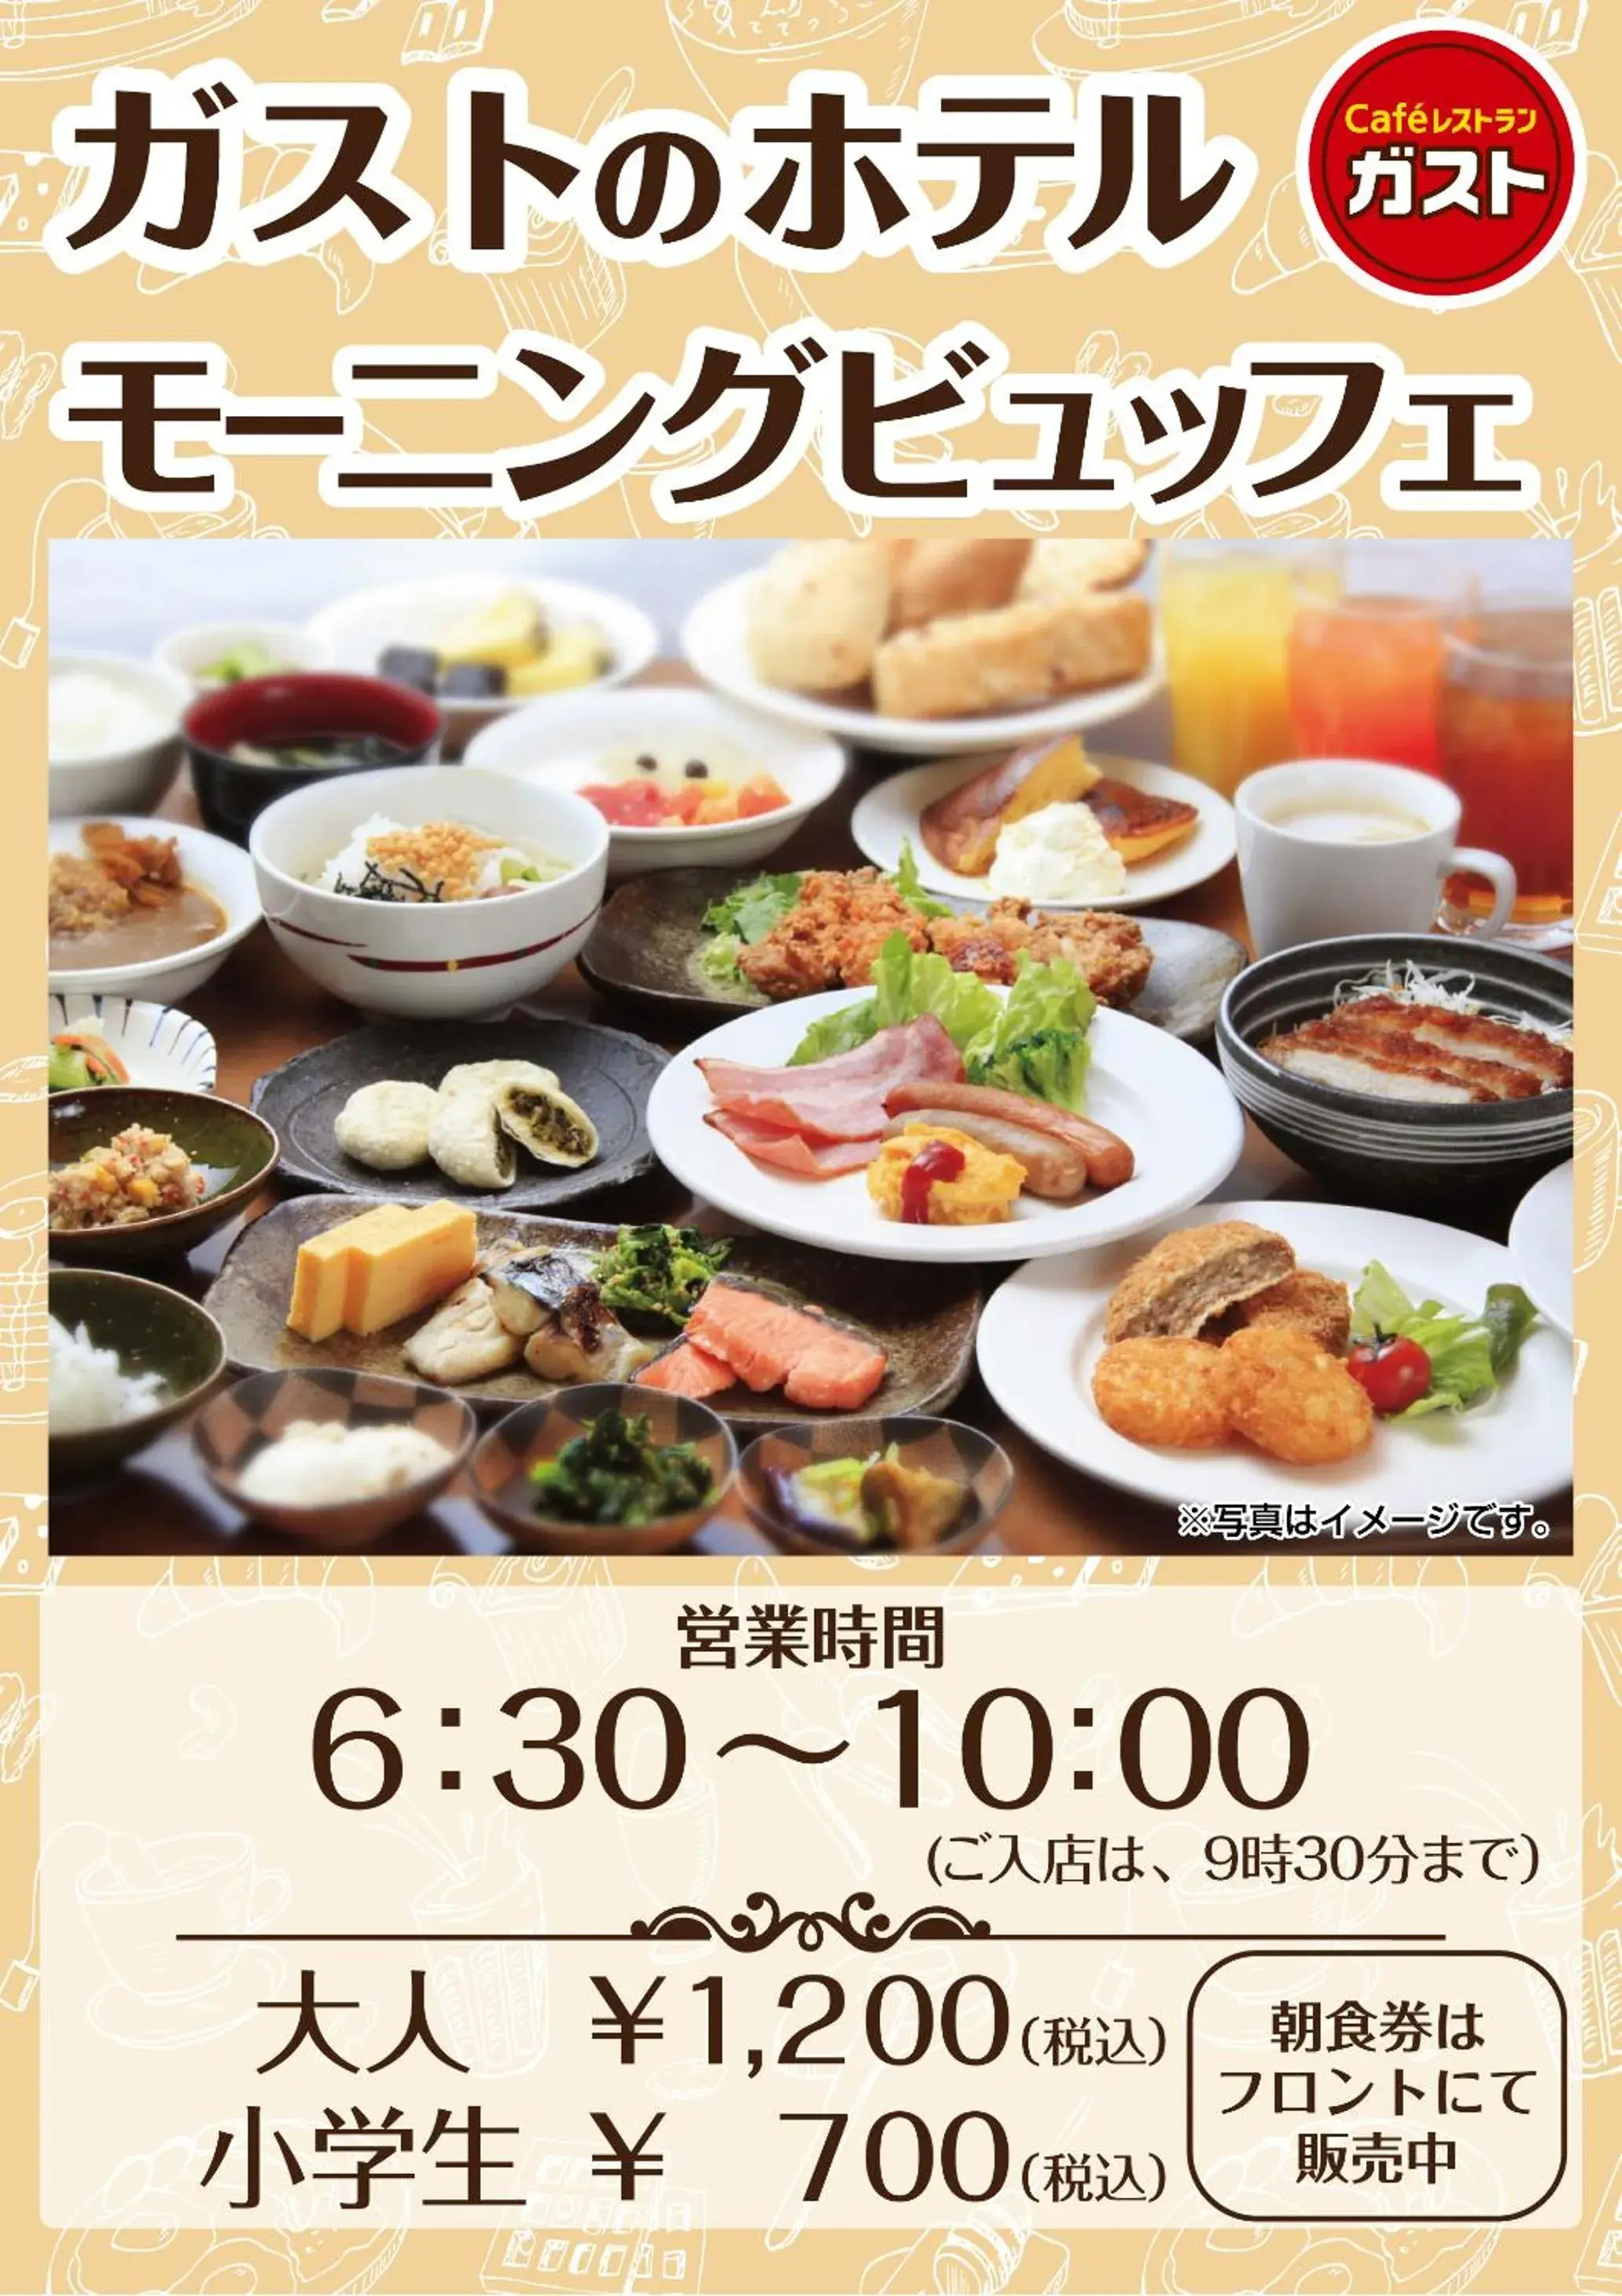 Food in Smile Hotel Tokyo Nihonbashi